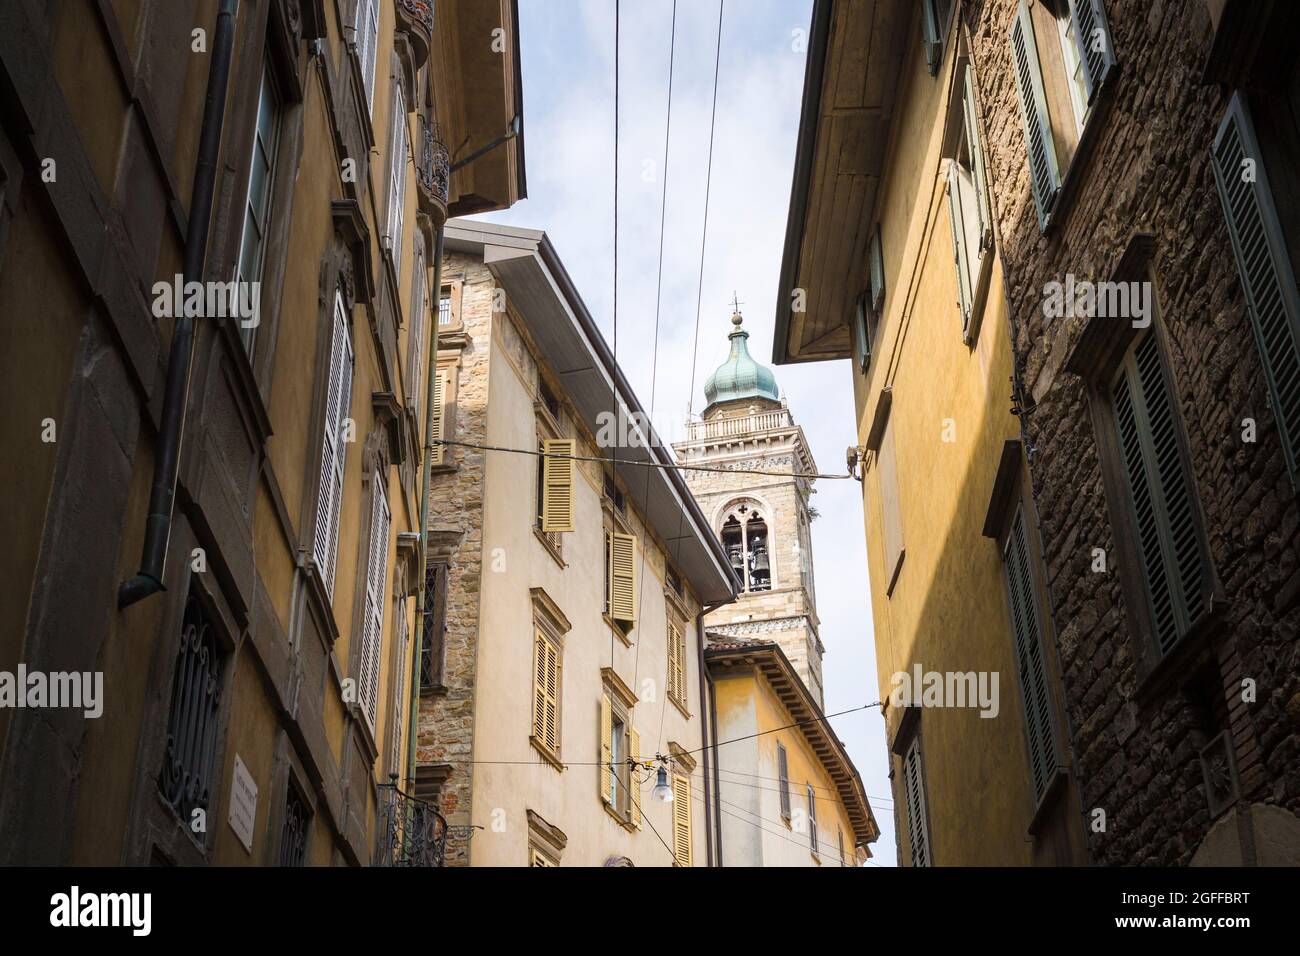 Citta Alta, Bergamo, Italien: Typische Straßenszene; Palazzos mit versperrten Fenstern; enge, geschwungene Straßen; Blick auf die Basilika S. Maria Maggiore. Stockfoto